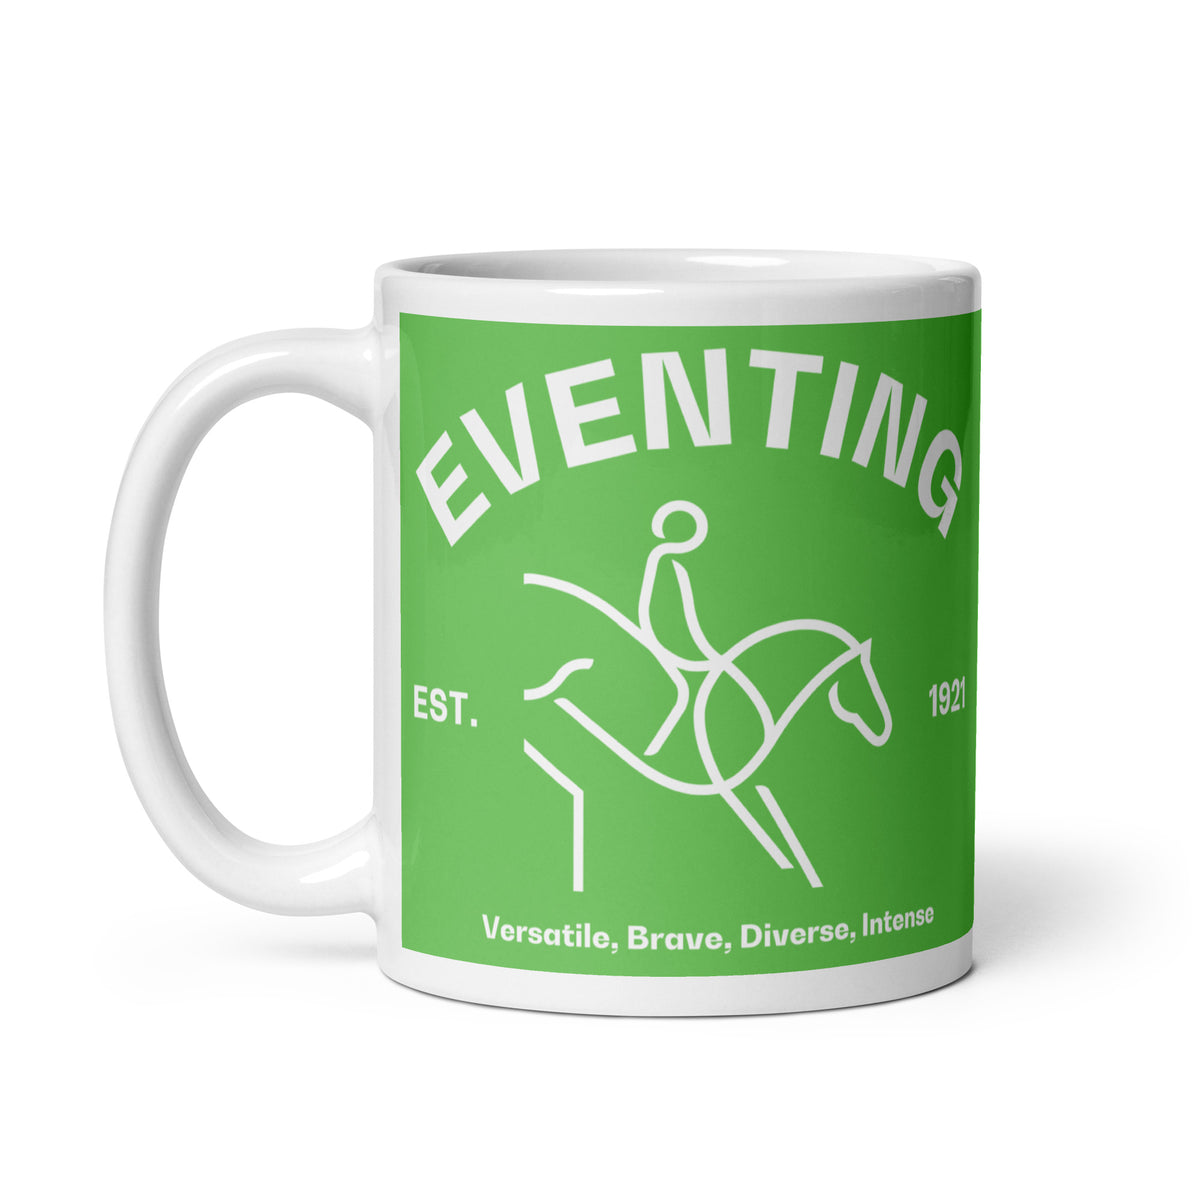 Eventing FEI Mug